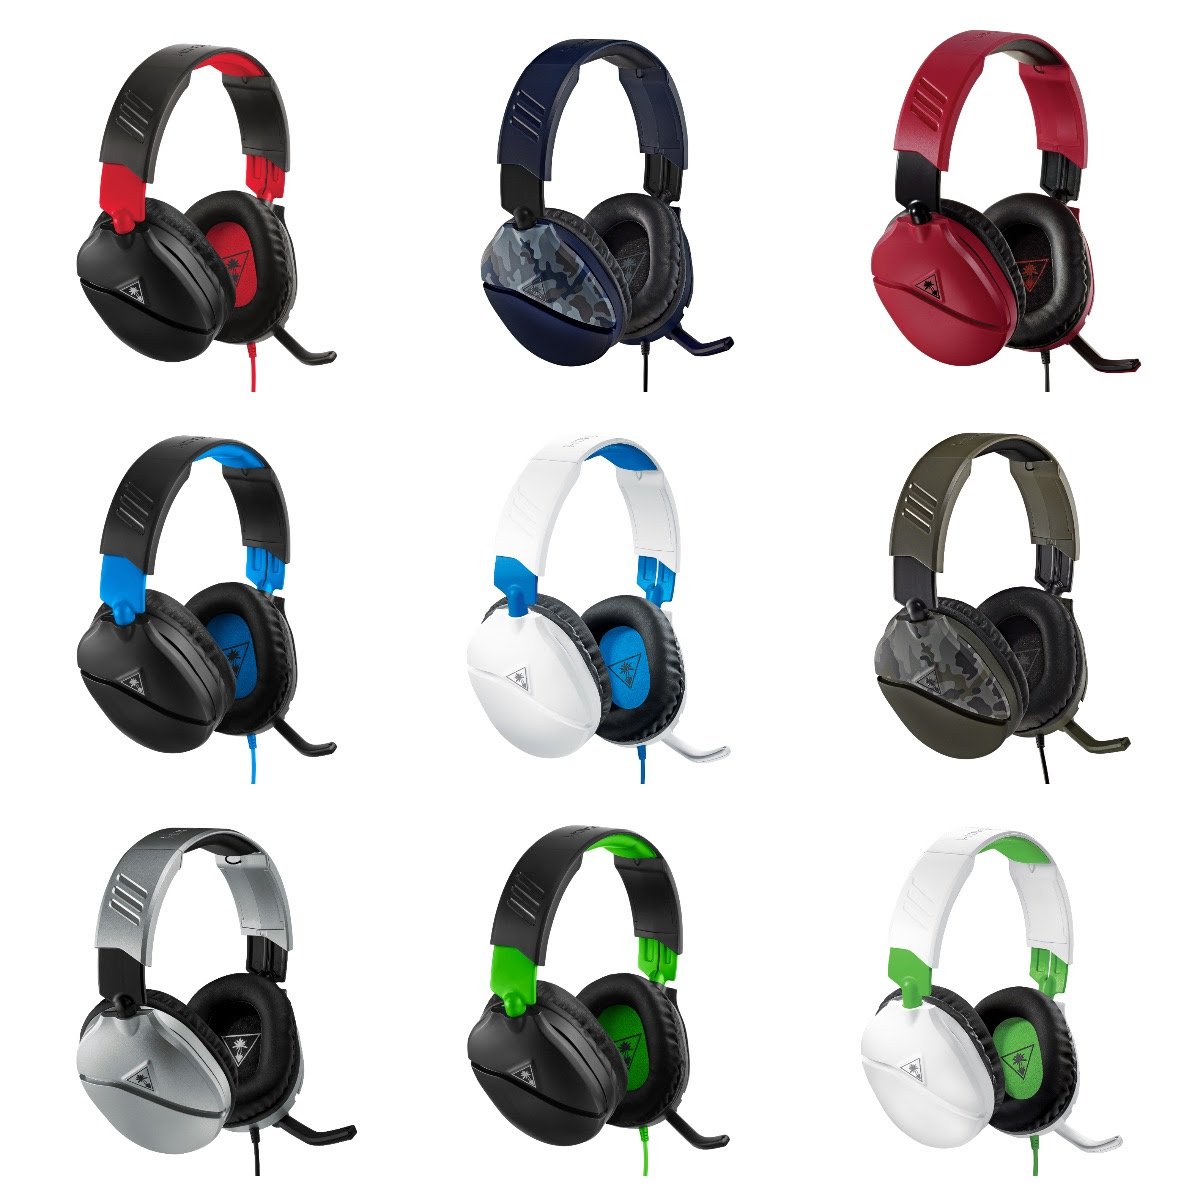 A série de headsets Recon chega ao Brasil em 14 modelos diferentes